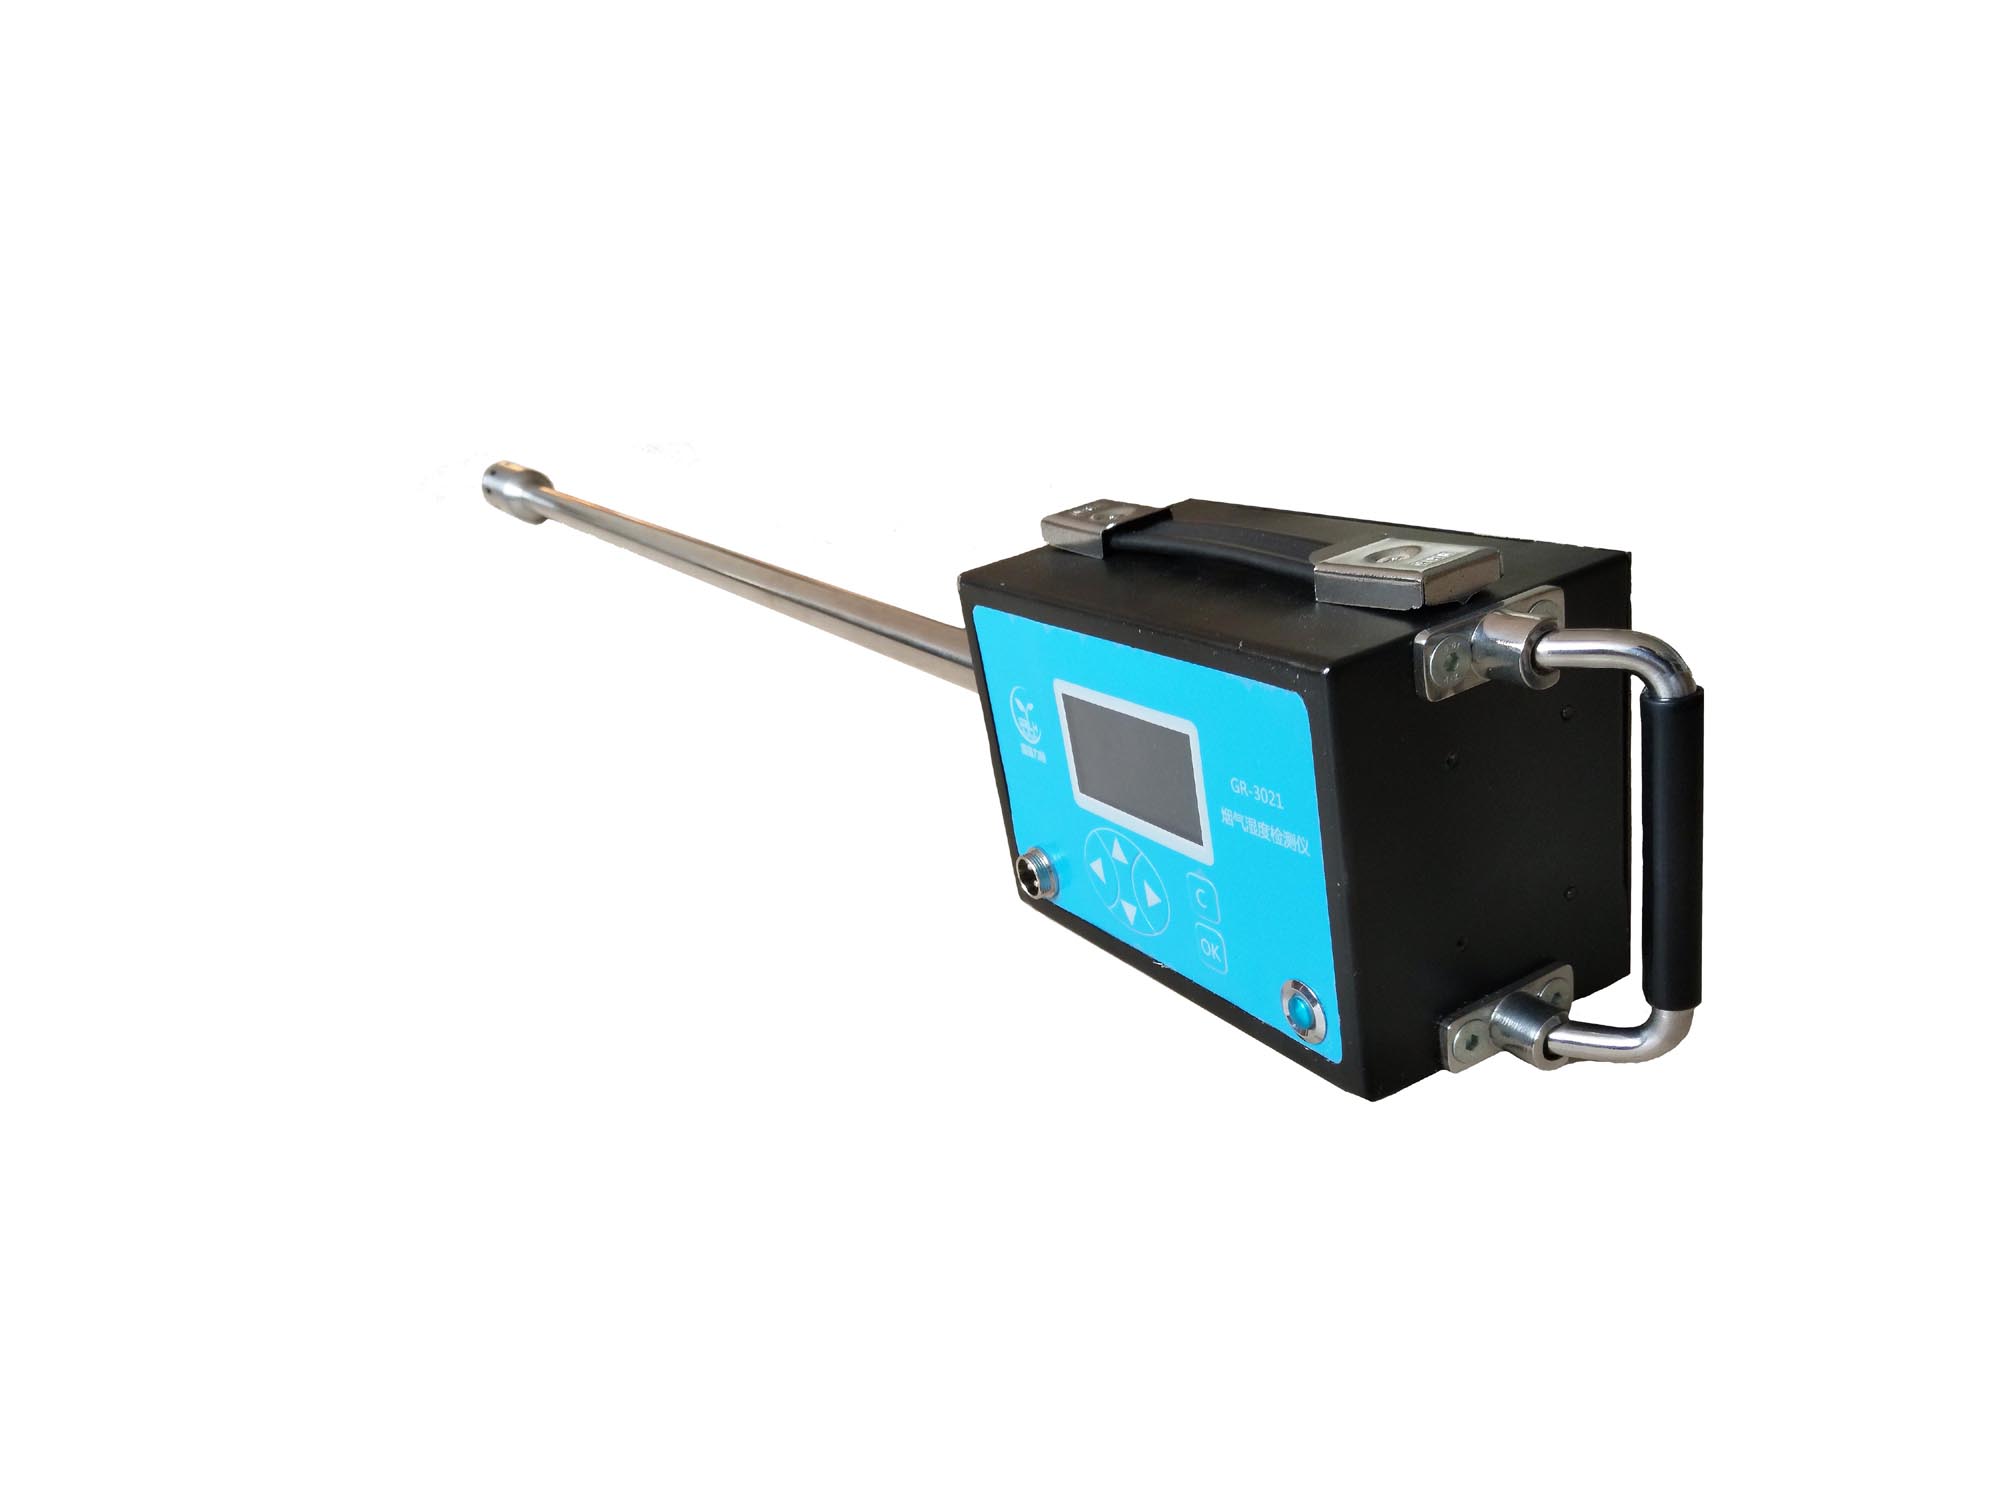 青岛国瑞直销供应 GR-3021型烟气湿度检测仪 阻容法烟气湿度仪